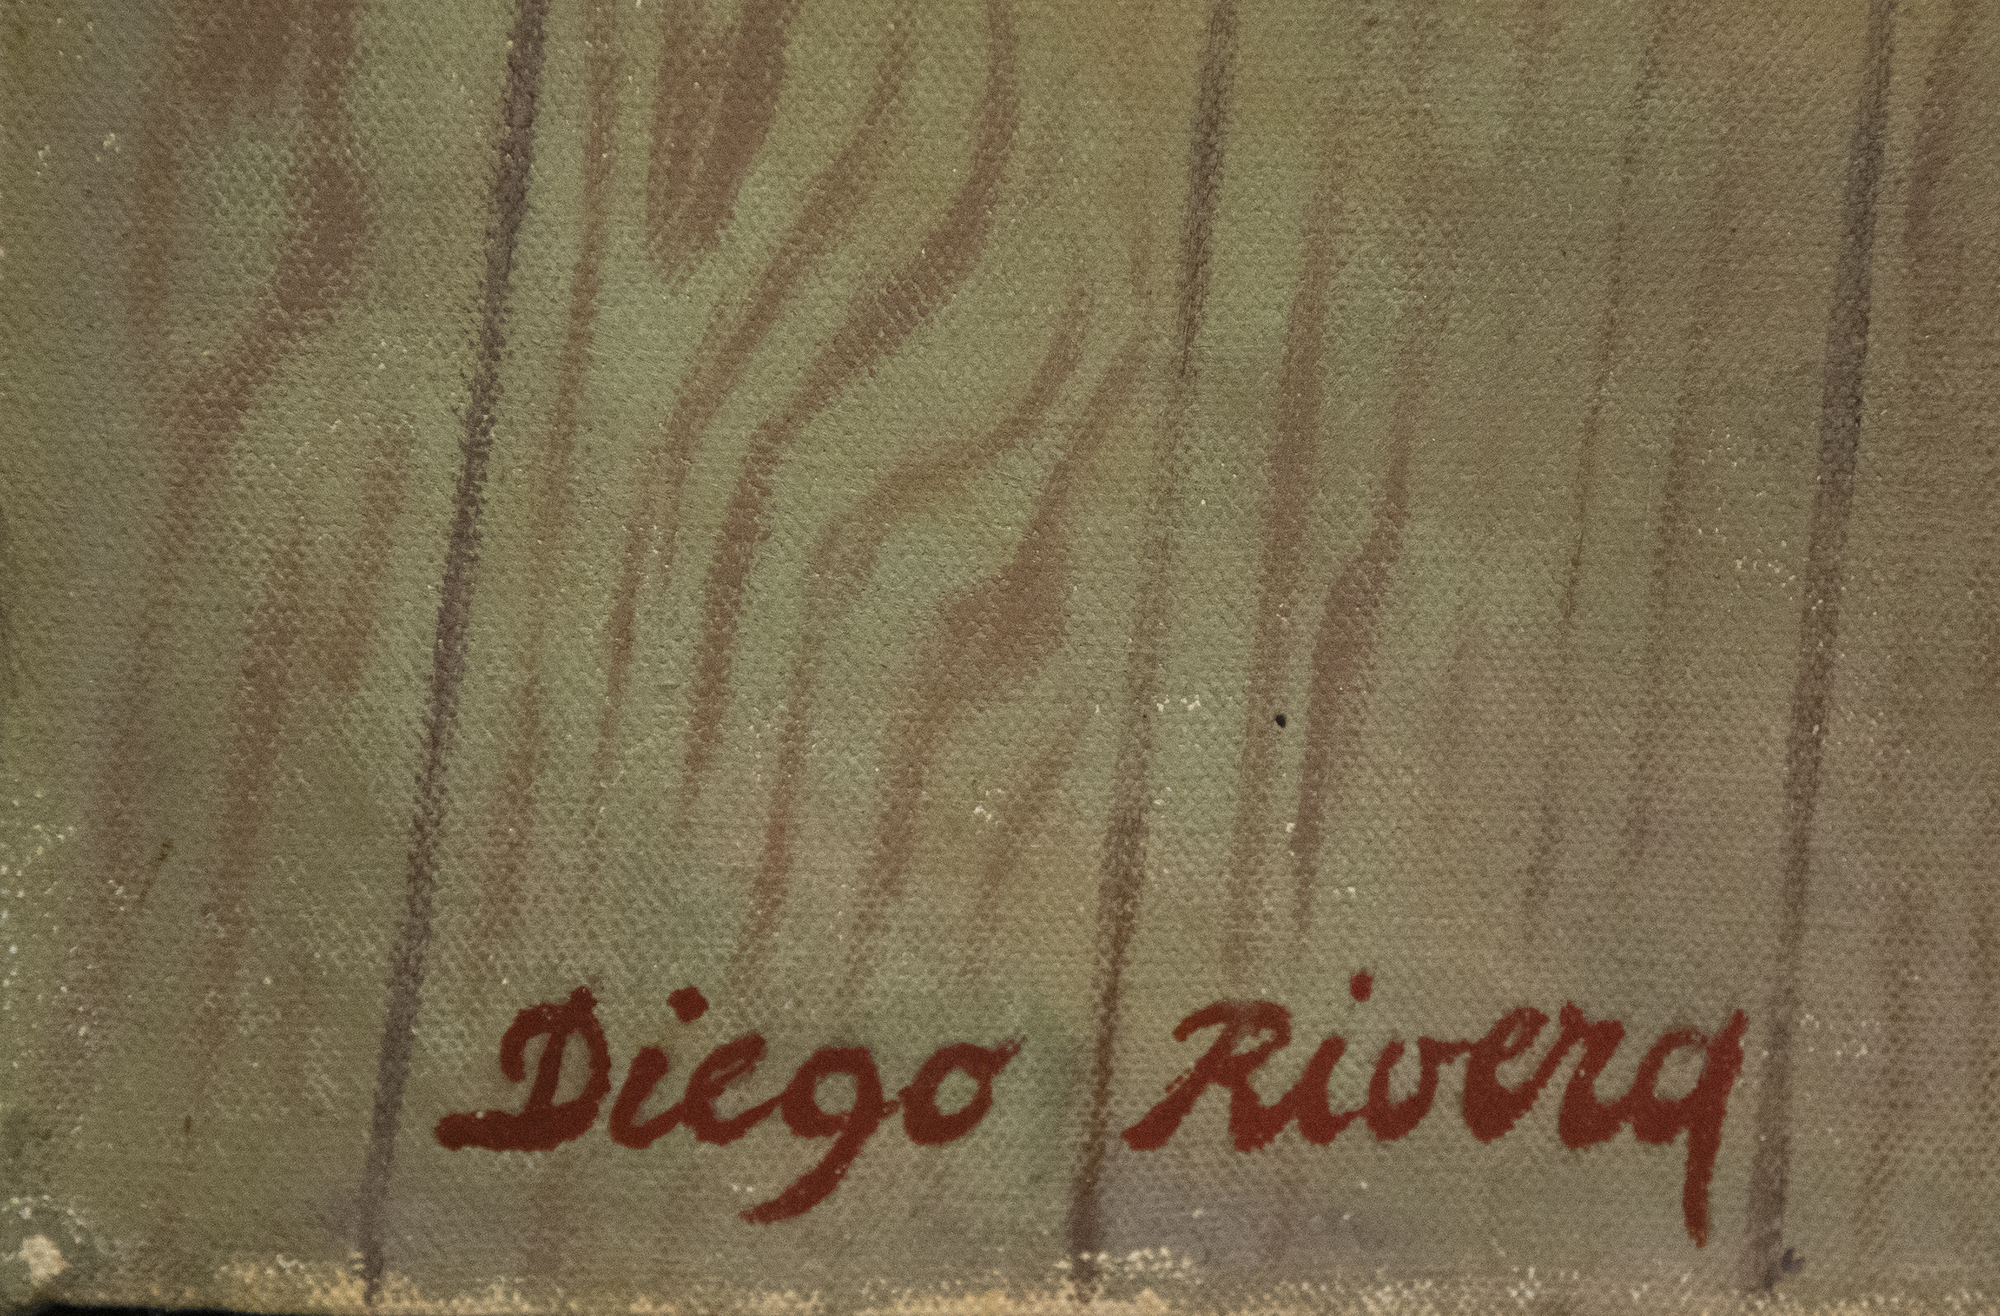 دييغو ريفيرا -- صورة انريكيتا G. دافيلا -- النفط على قماش -- 79 1 / 8 × 48 3 / 8 في.